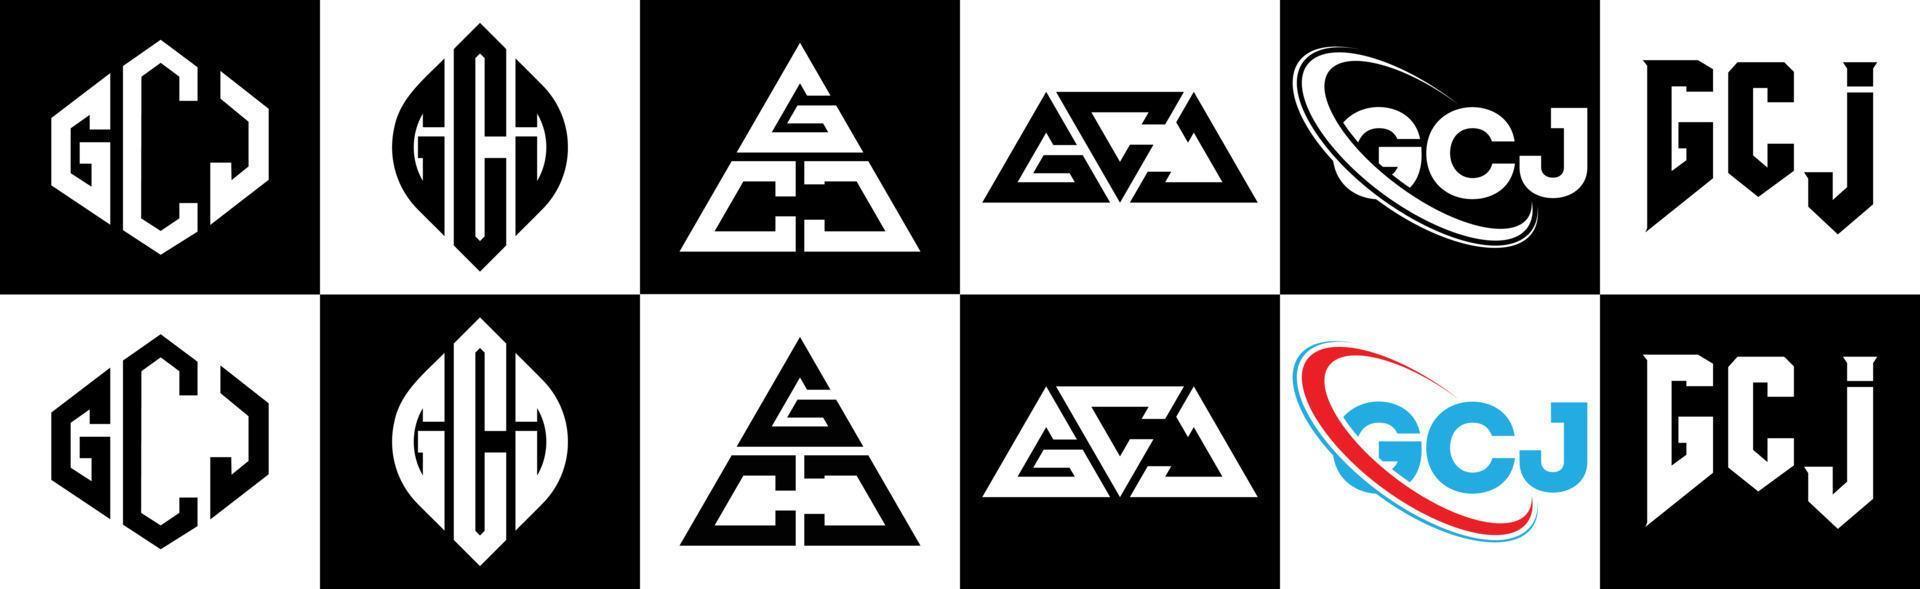 Diseño de logotipo de letra gcj en seis estilos. gcj polígono, círculo, triángulo, hexágono, estilo plano y simple con logotipo de letra de variación de color blanco y negro en una mesa de trabajo. logotipo minimalista y clásico de gcj vector